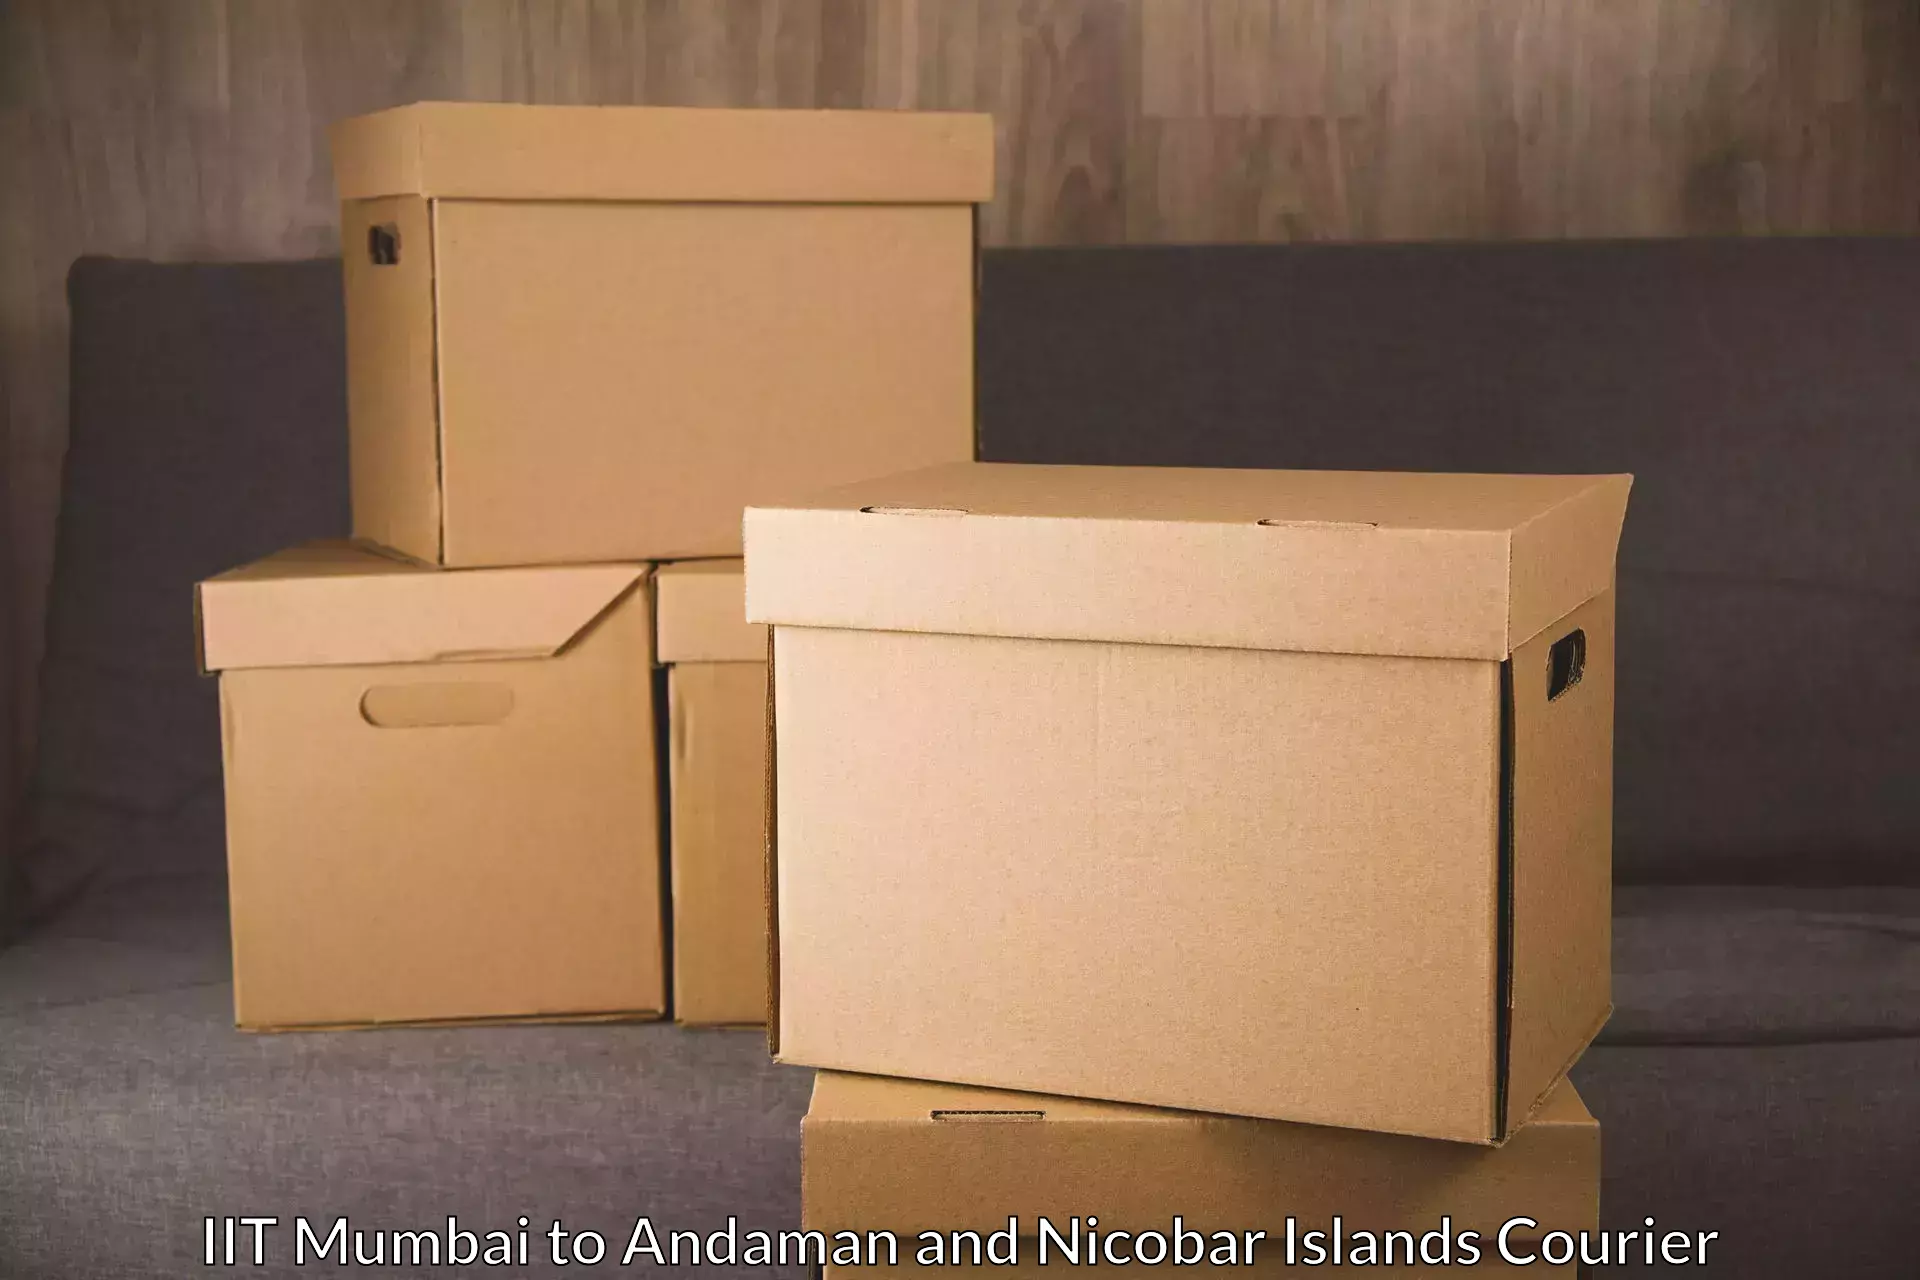 High-capacity parcel service IIT Mumbai to Andaman and Nicobar Islands